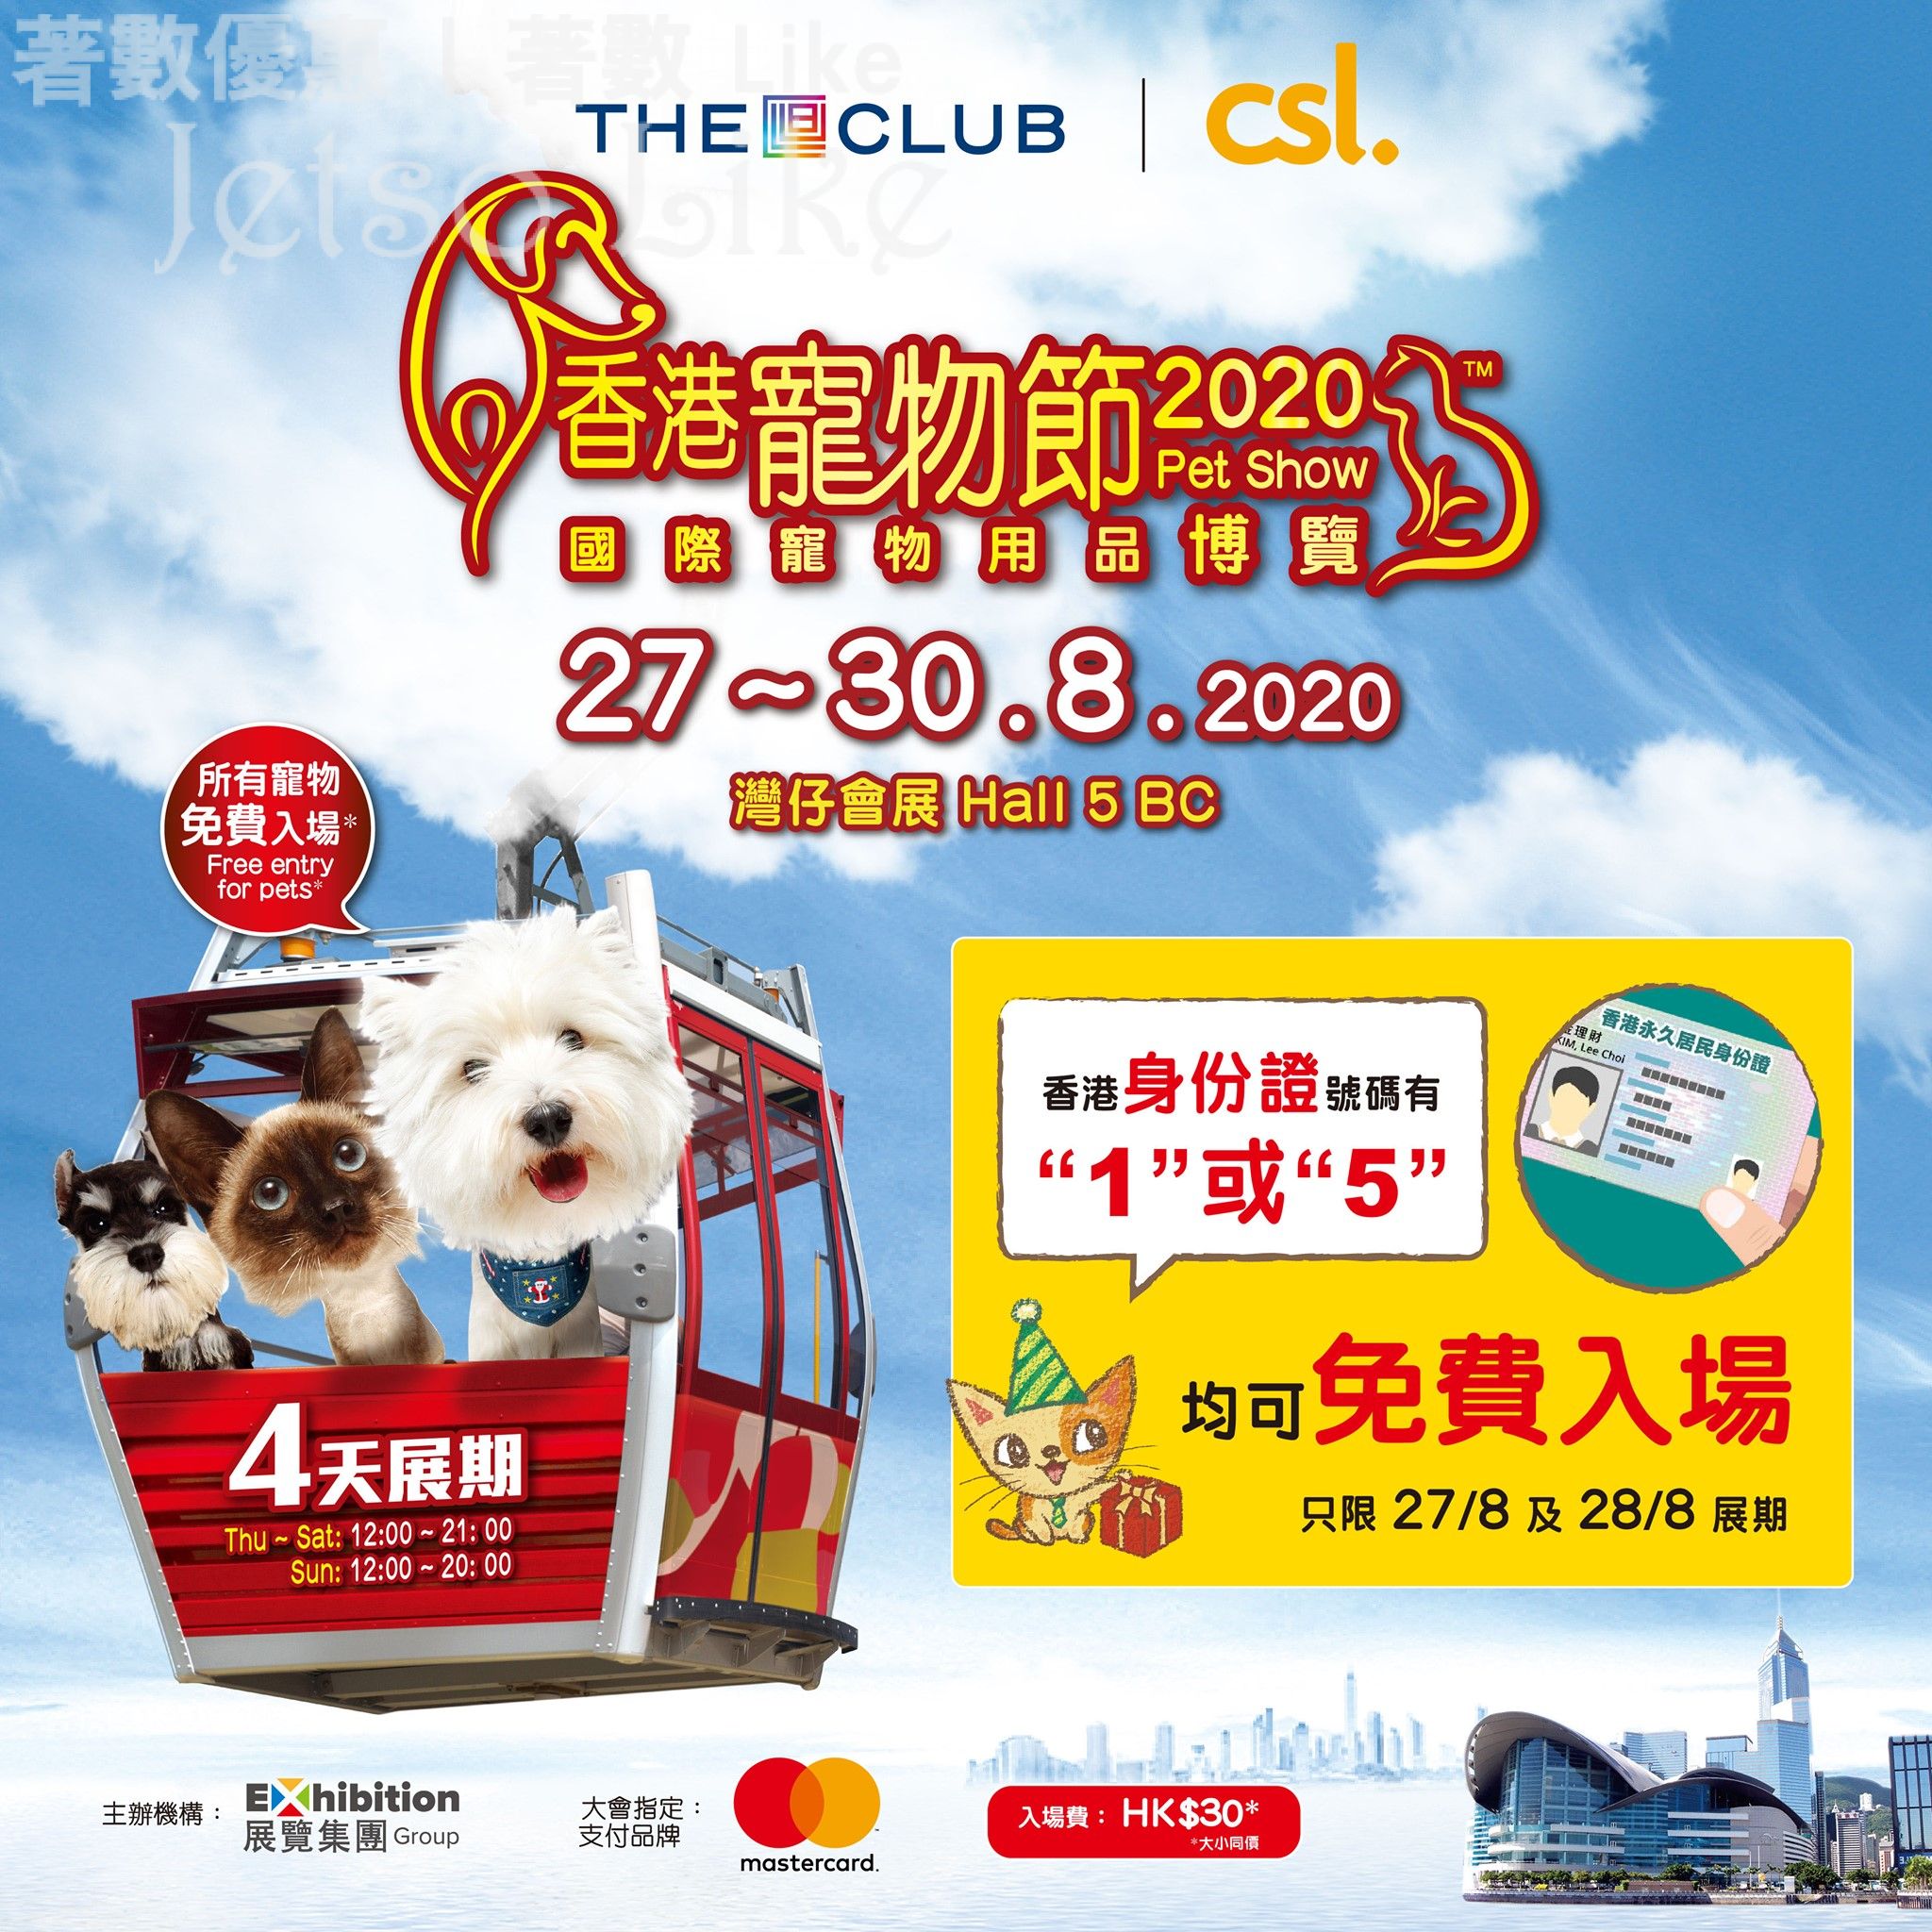 香港寵物節 指定身份證號碼 免費入場